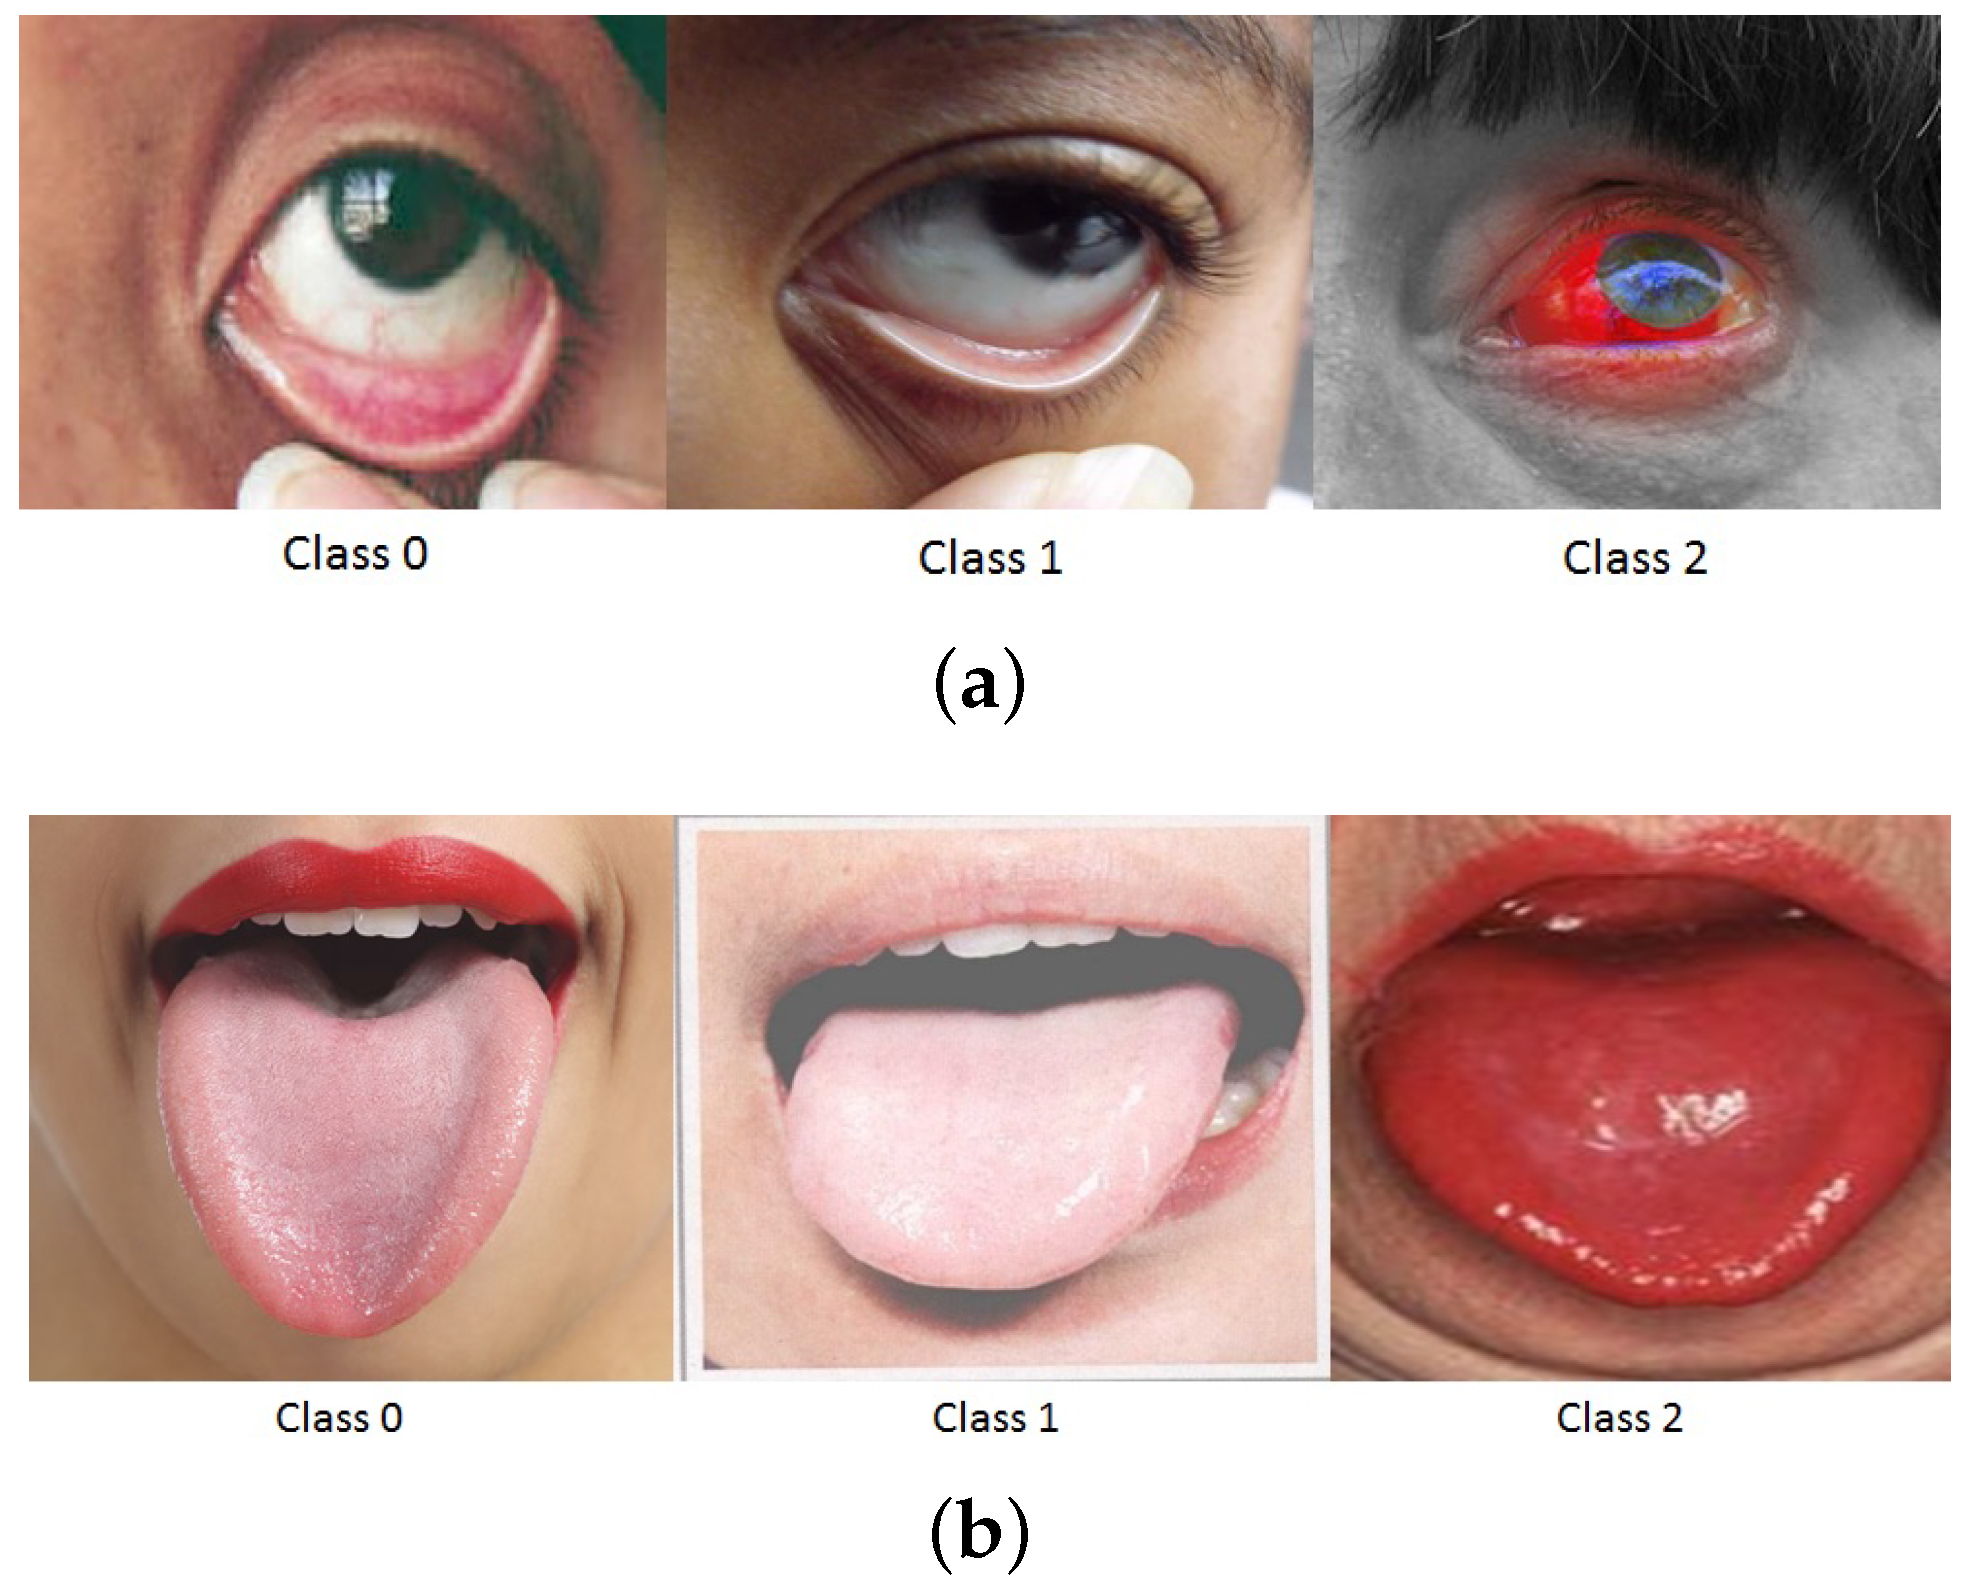 anemia symptoms eye